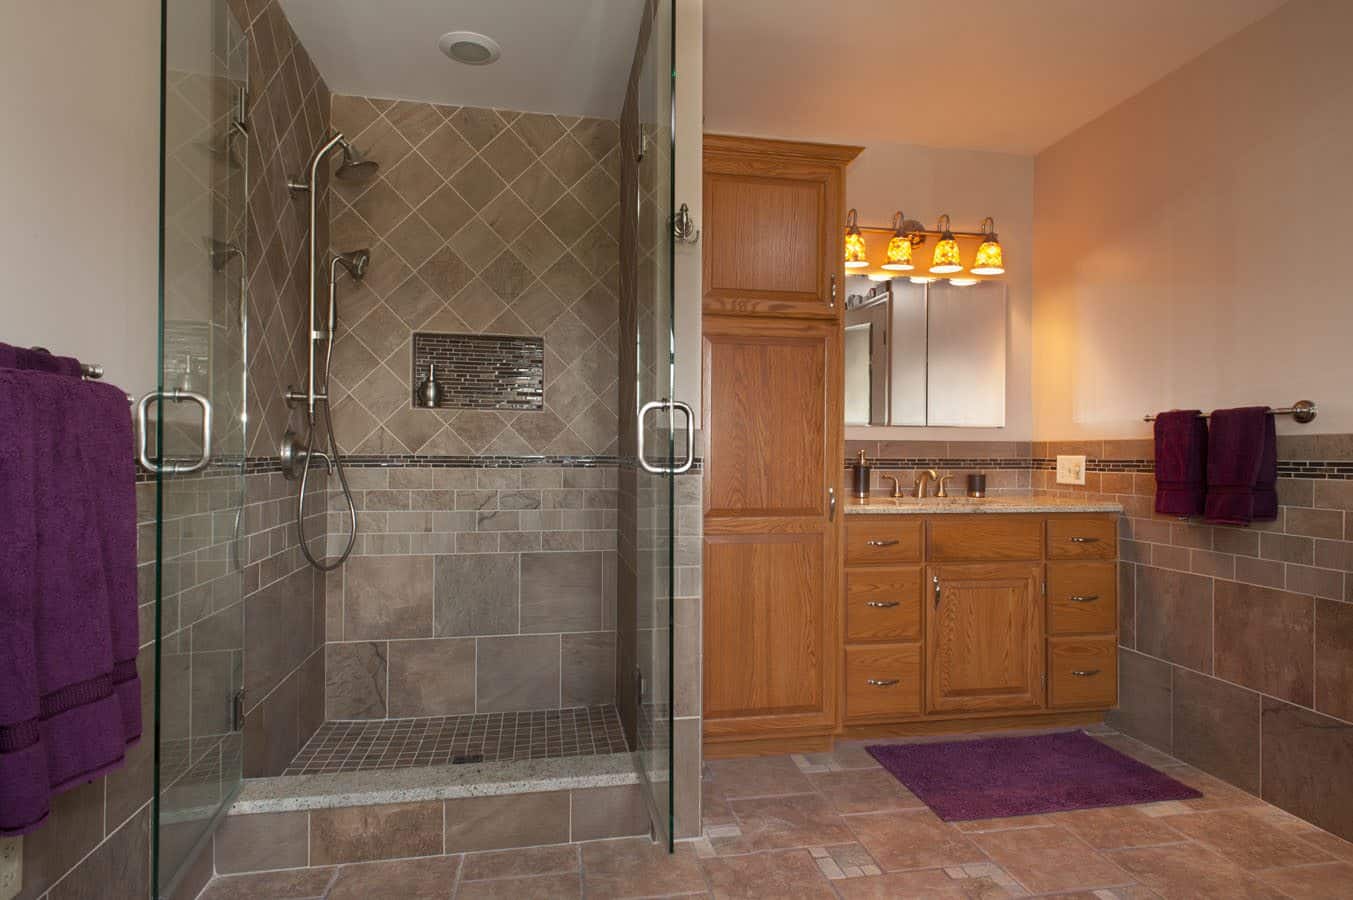 Sallada Bathroom Remodel in Blandon, PA bathroom renovation